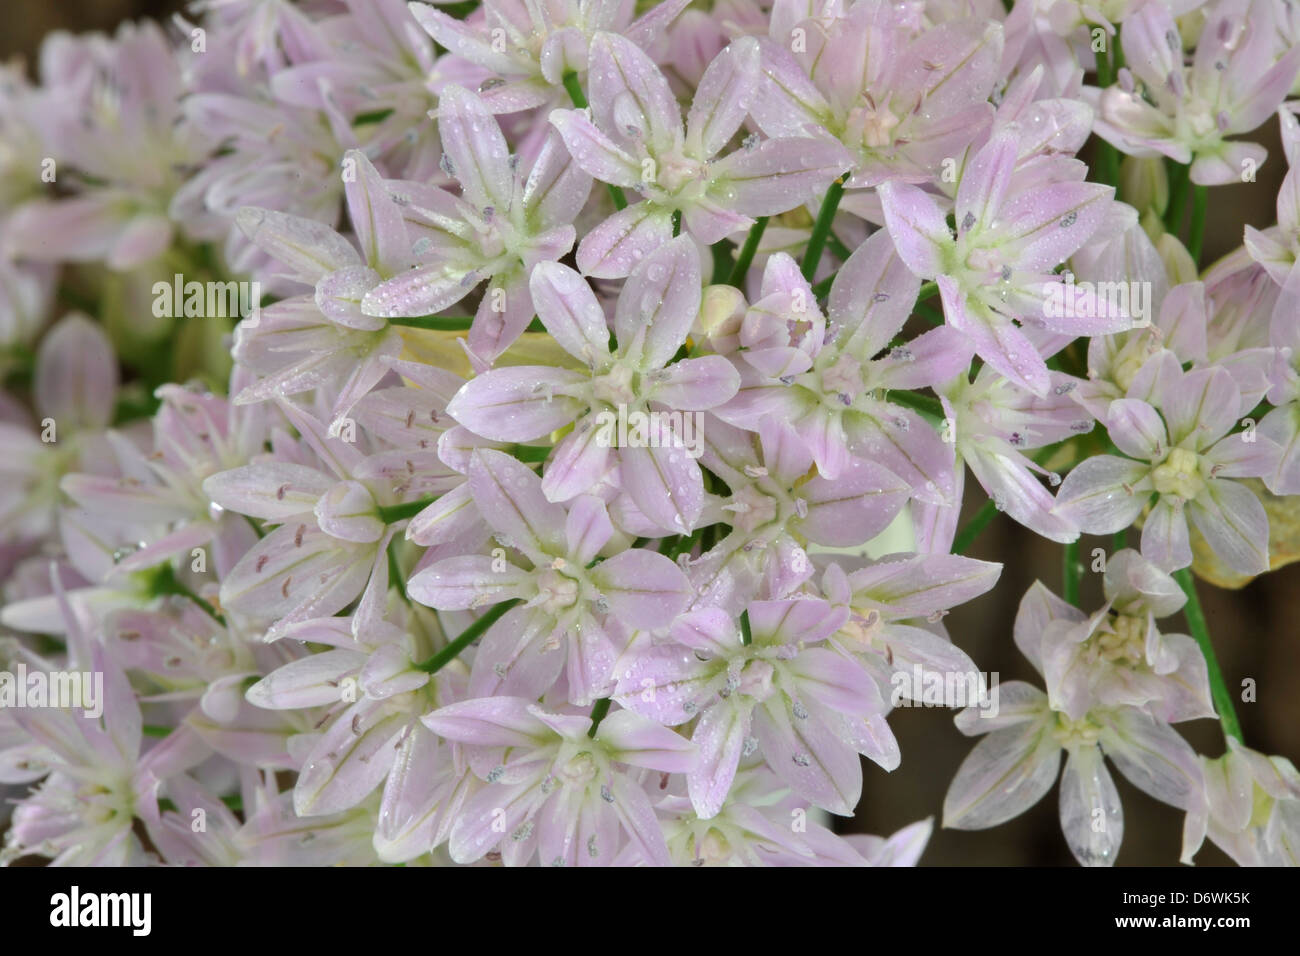 Close-up of Allium unifolium spring-flowering bulb Stock Photo